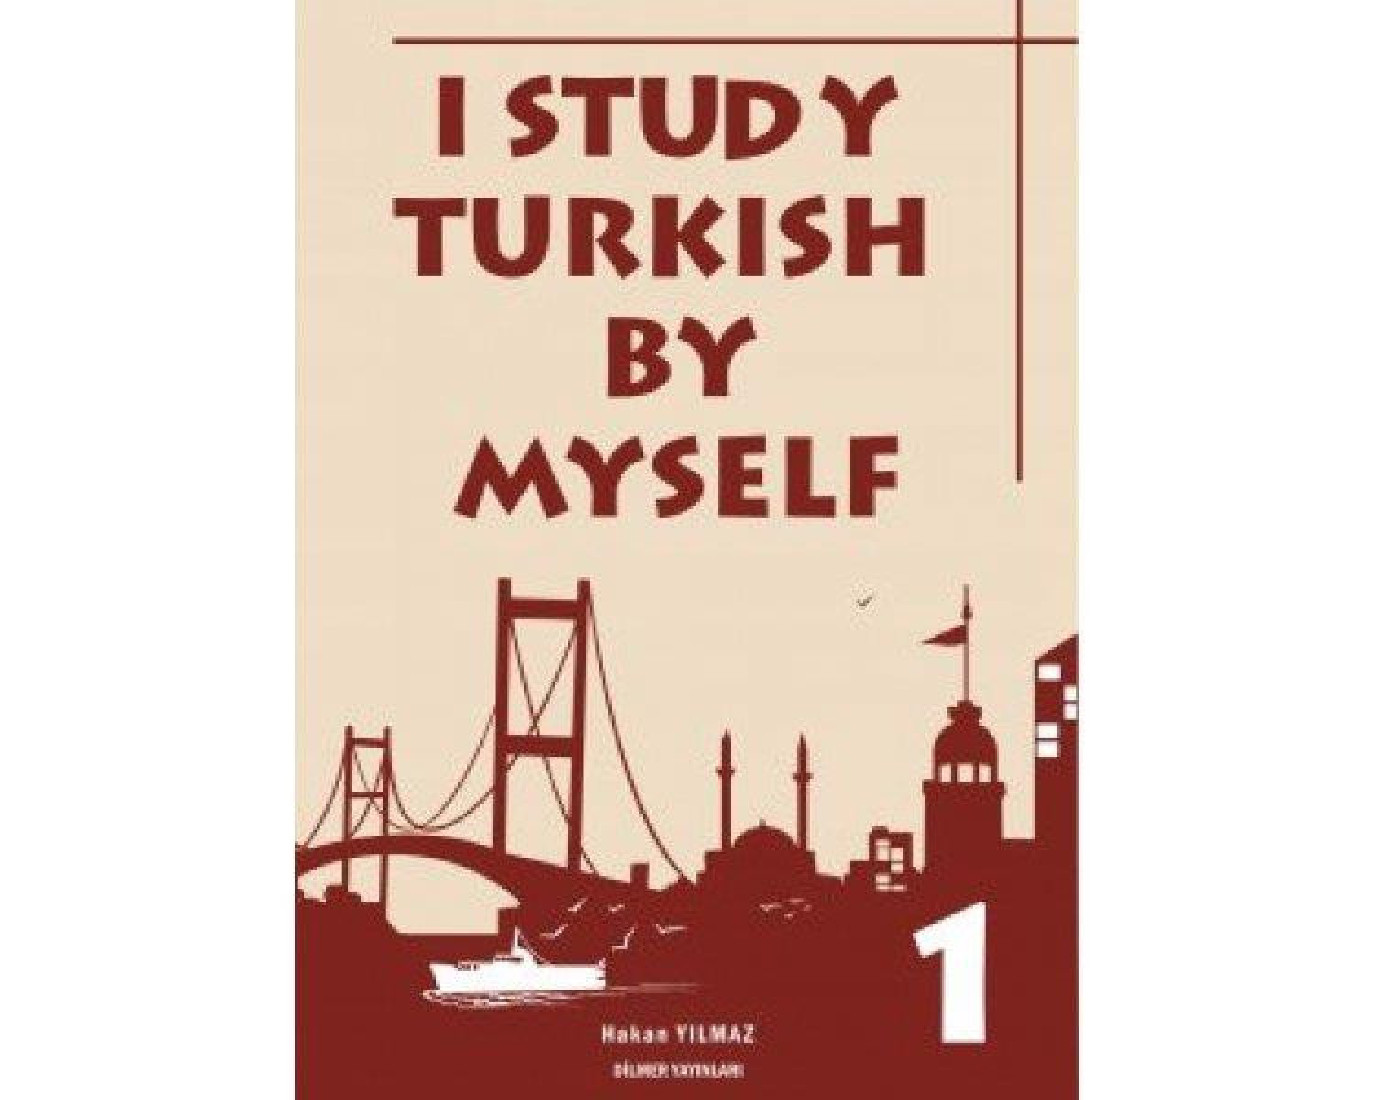 I STUDY TURKISH MYSELF 1